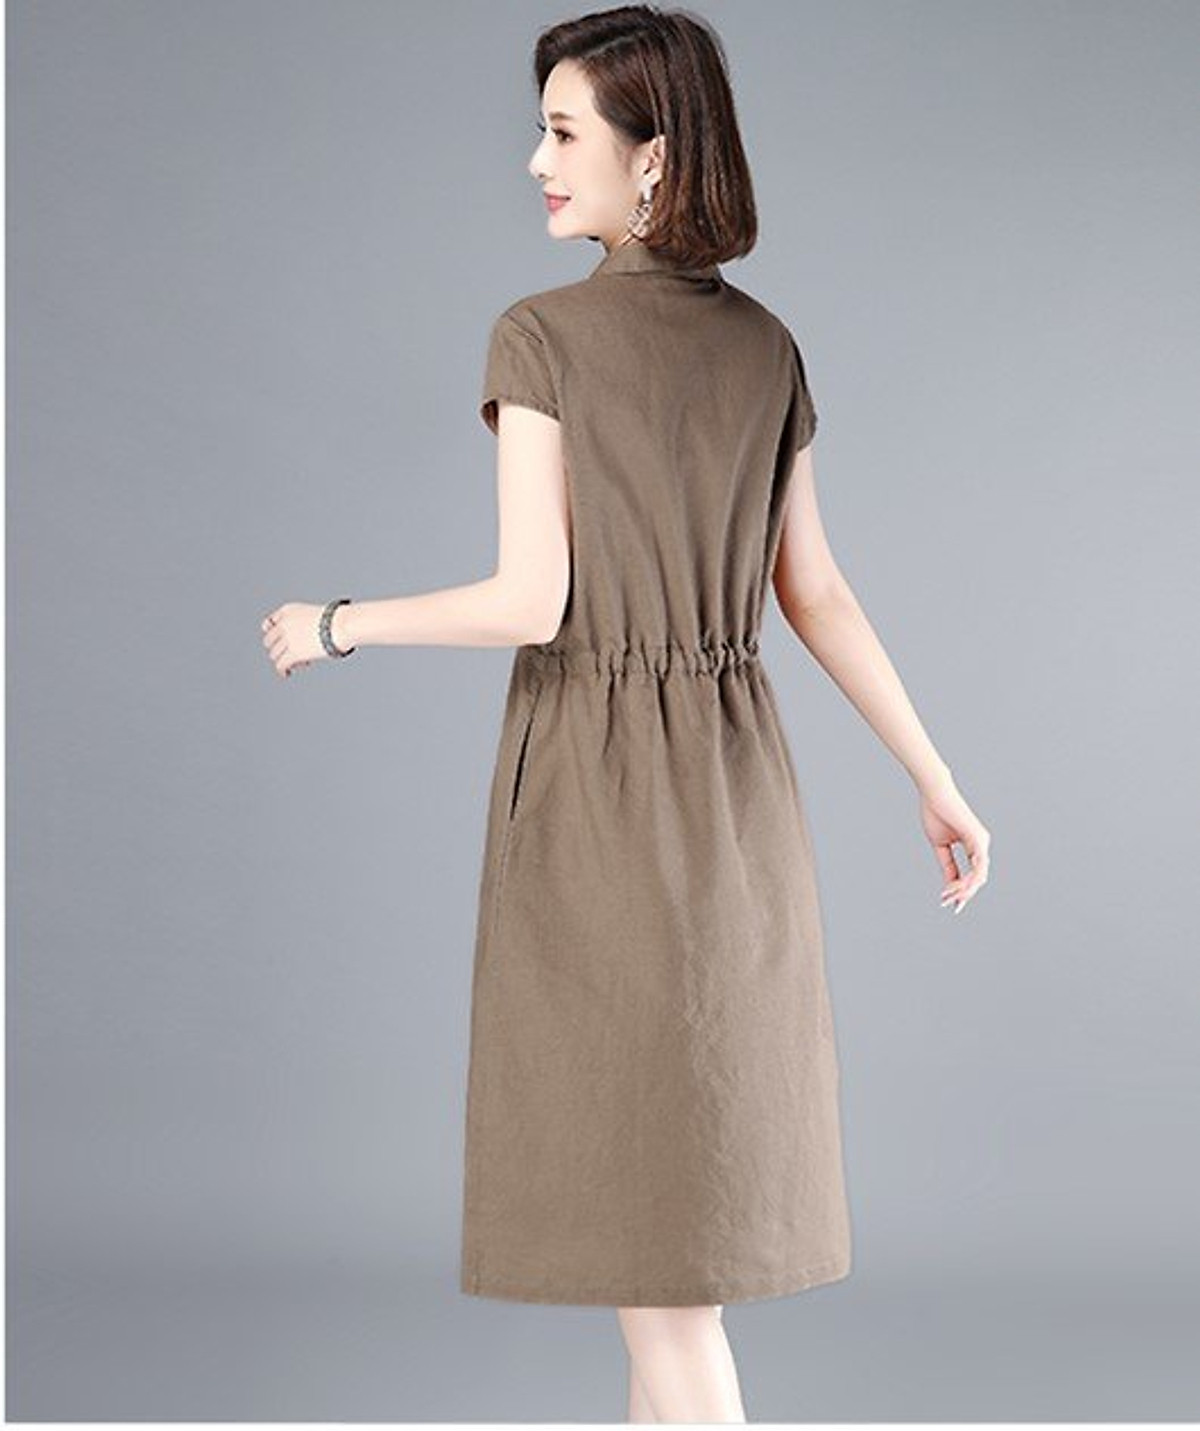 Đầm suông nữ vải đũi mềm mại, thiết kế tay ngắn rút eo, 2 túi sườn,